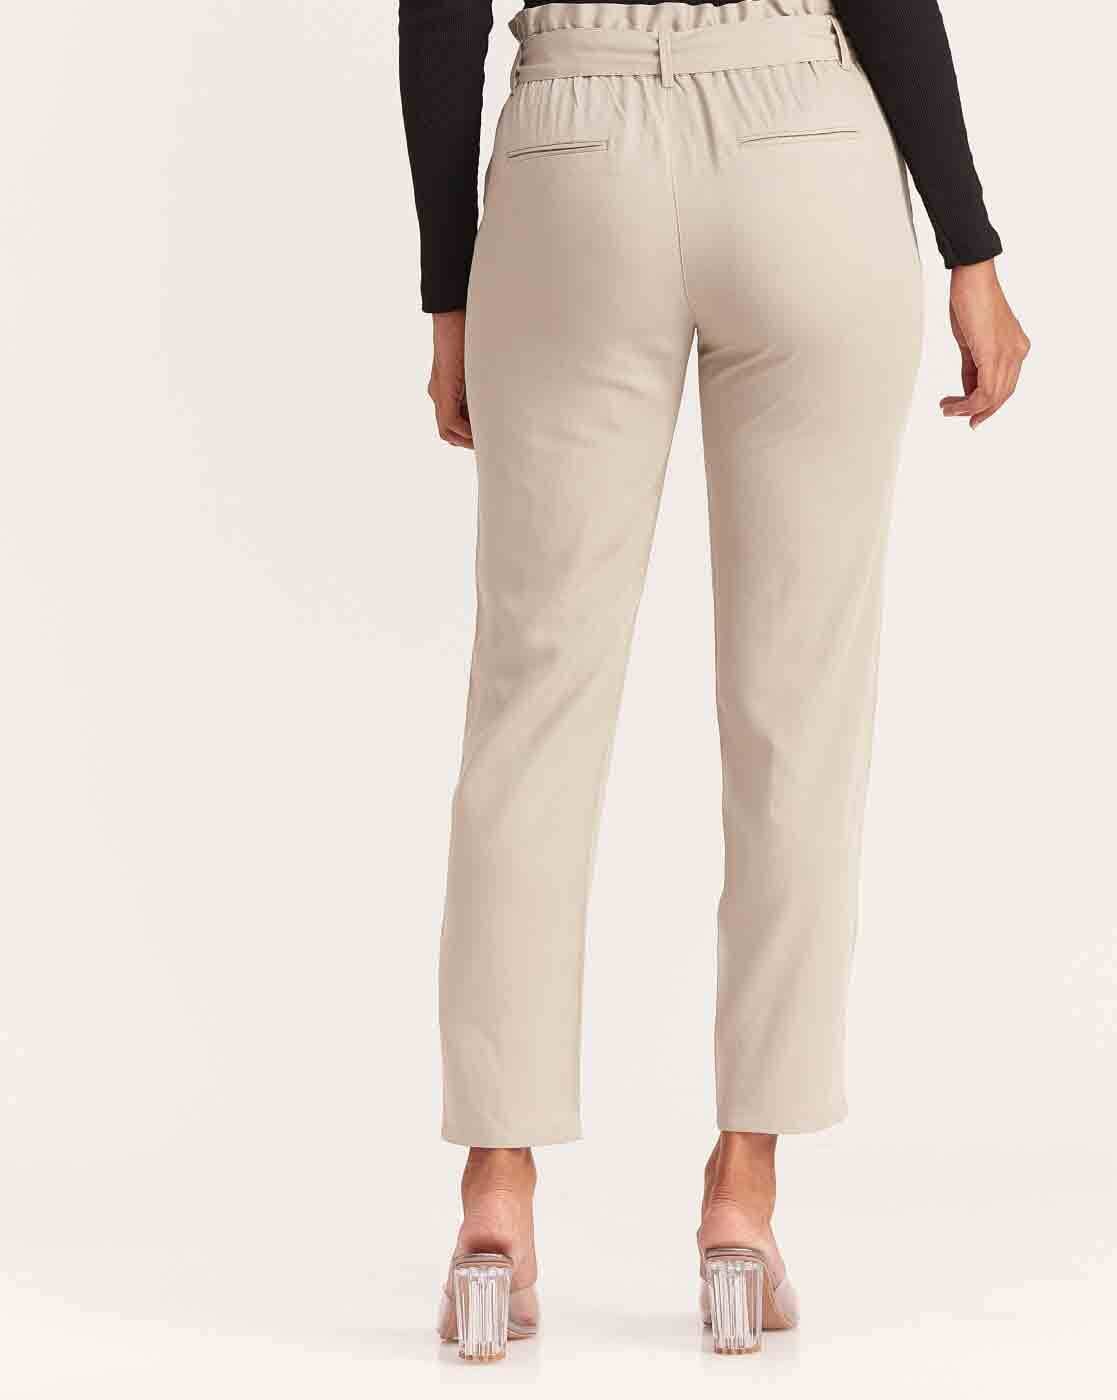 Buy MIST Trousers  Pants for Women by TRUSER Online  Ajiocom